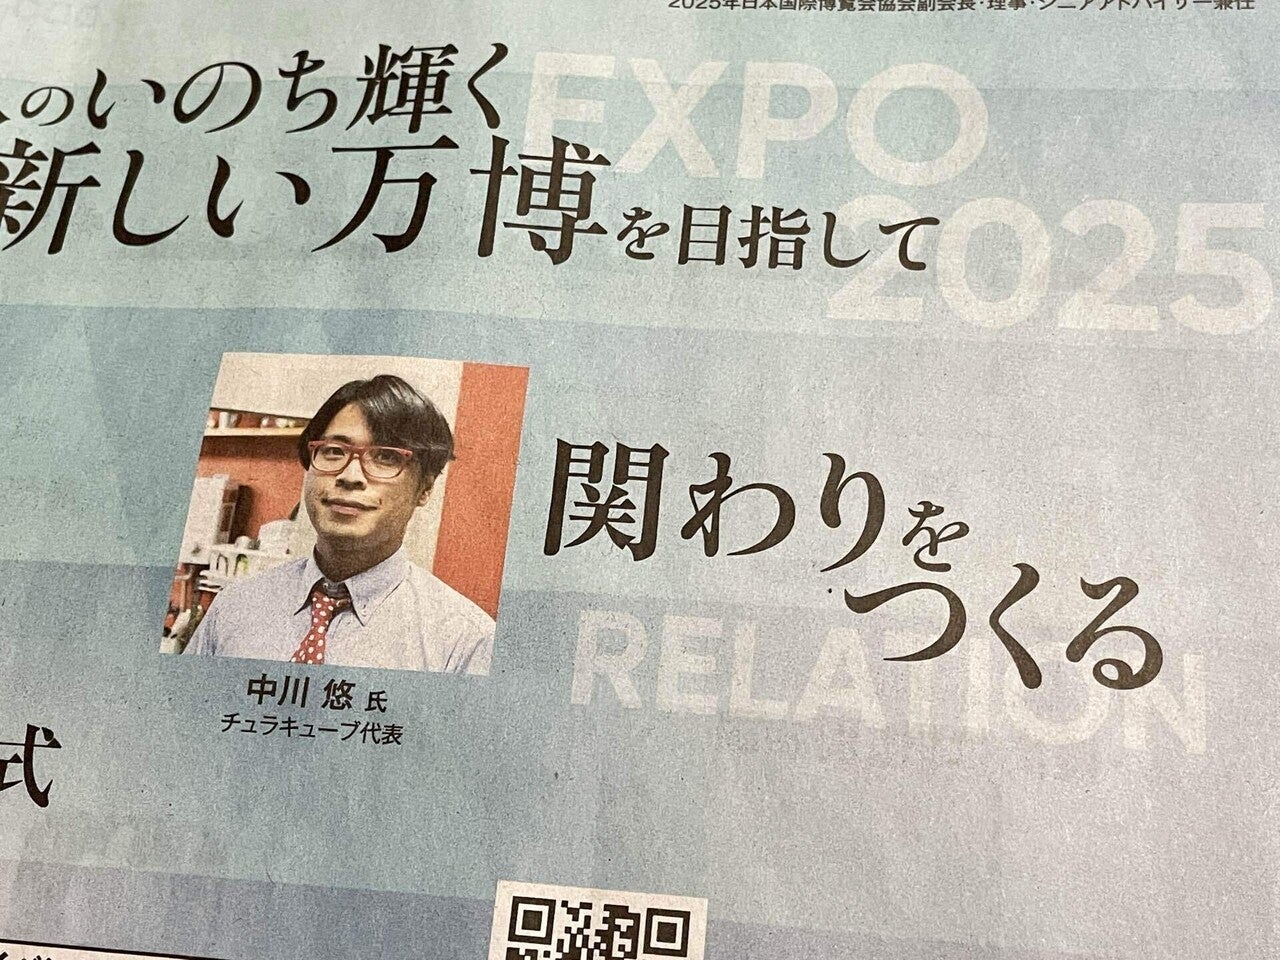 日経新聞にSDGsフェスの追加告知が掲載